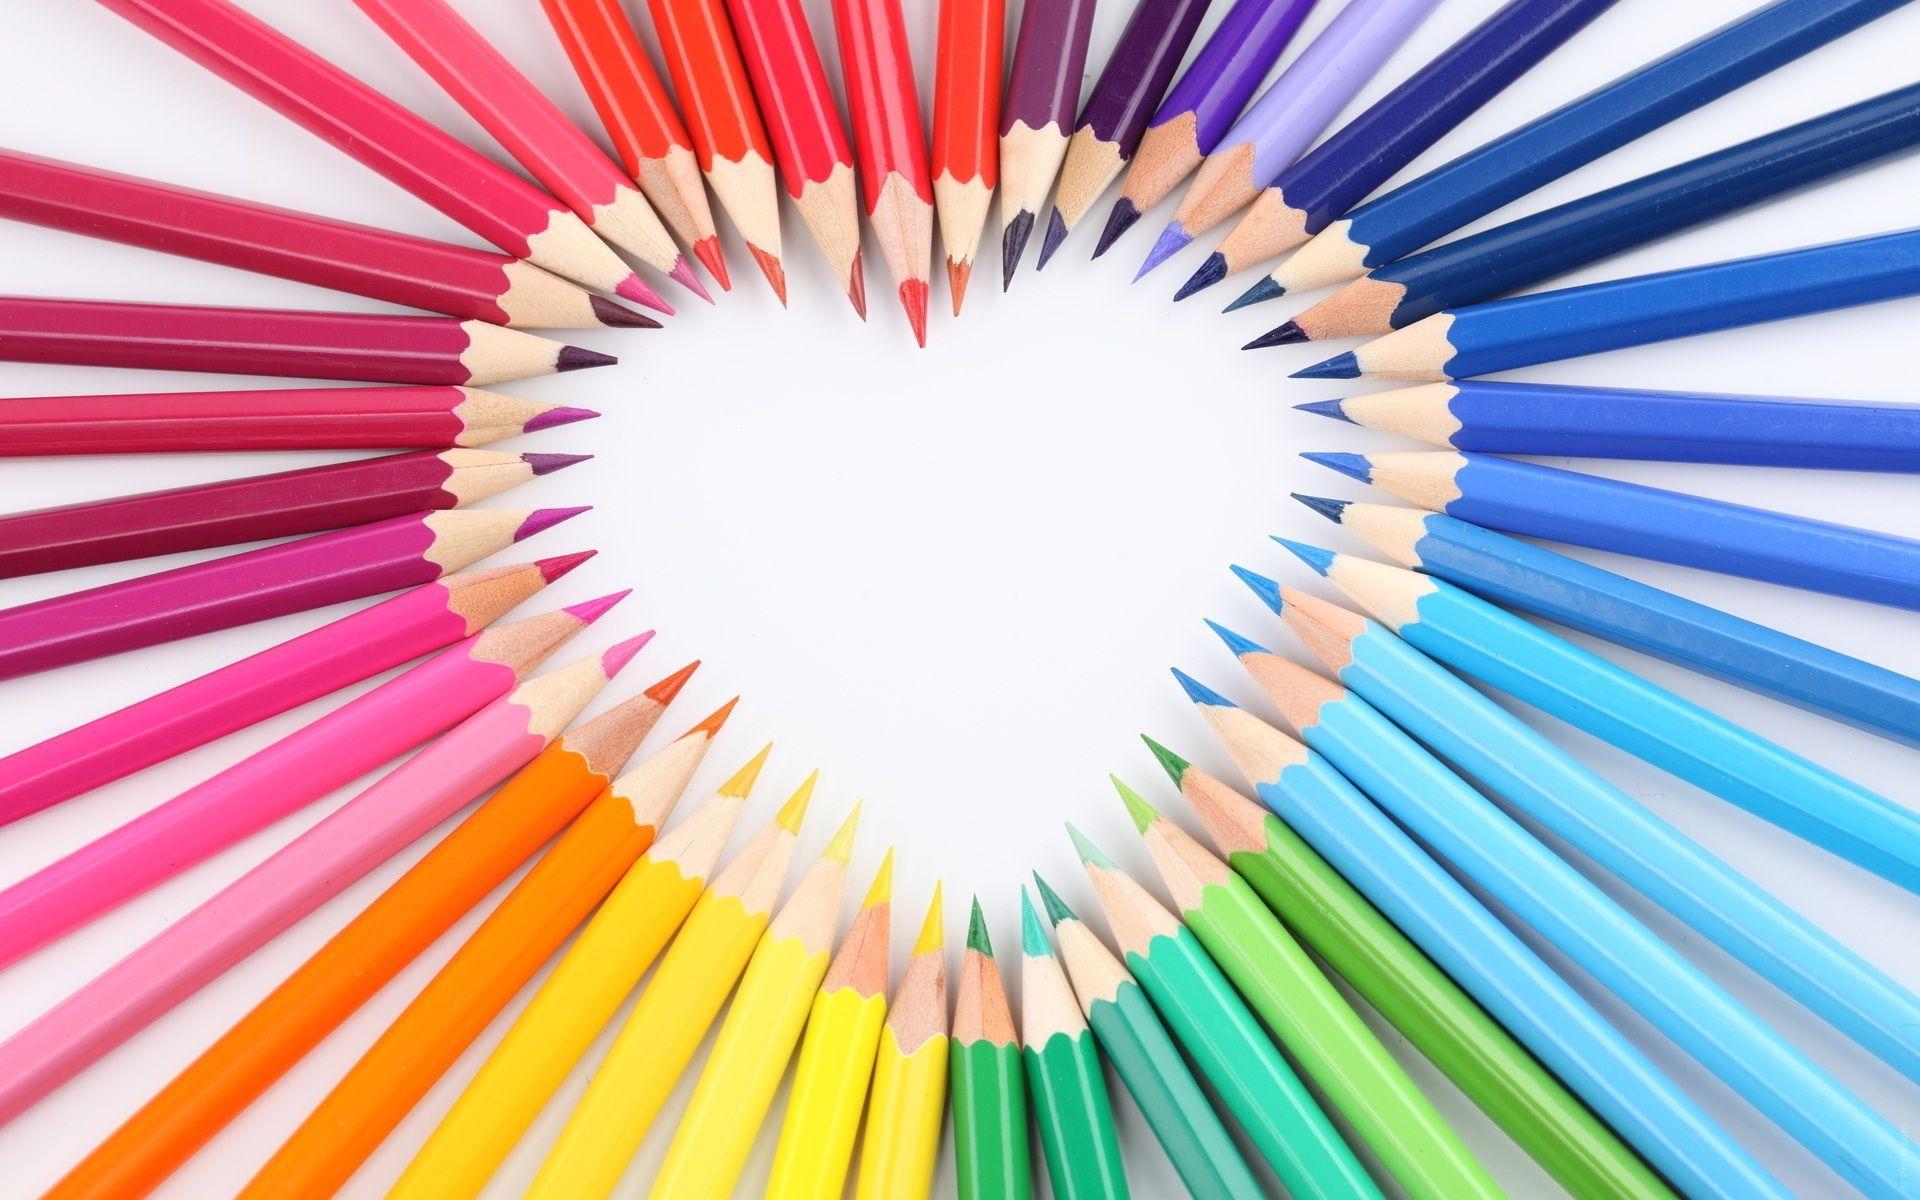 Heart by arranged colorful pencils wallpaper. HD Wallpaper Rocks